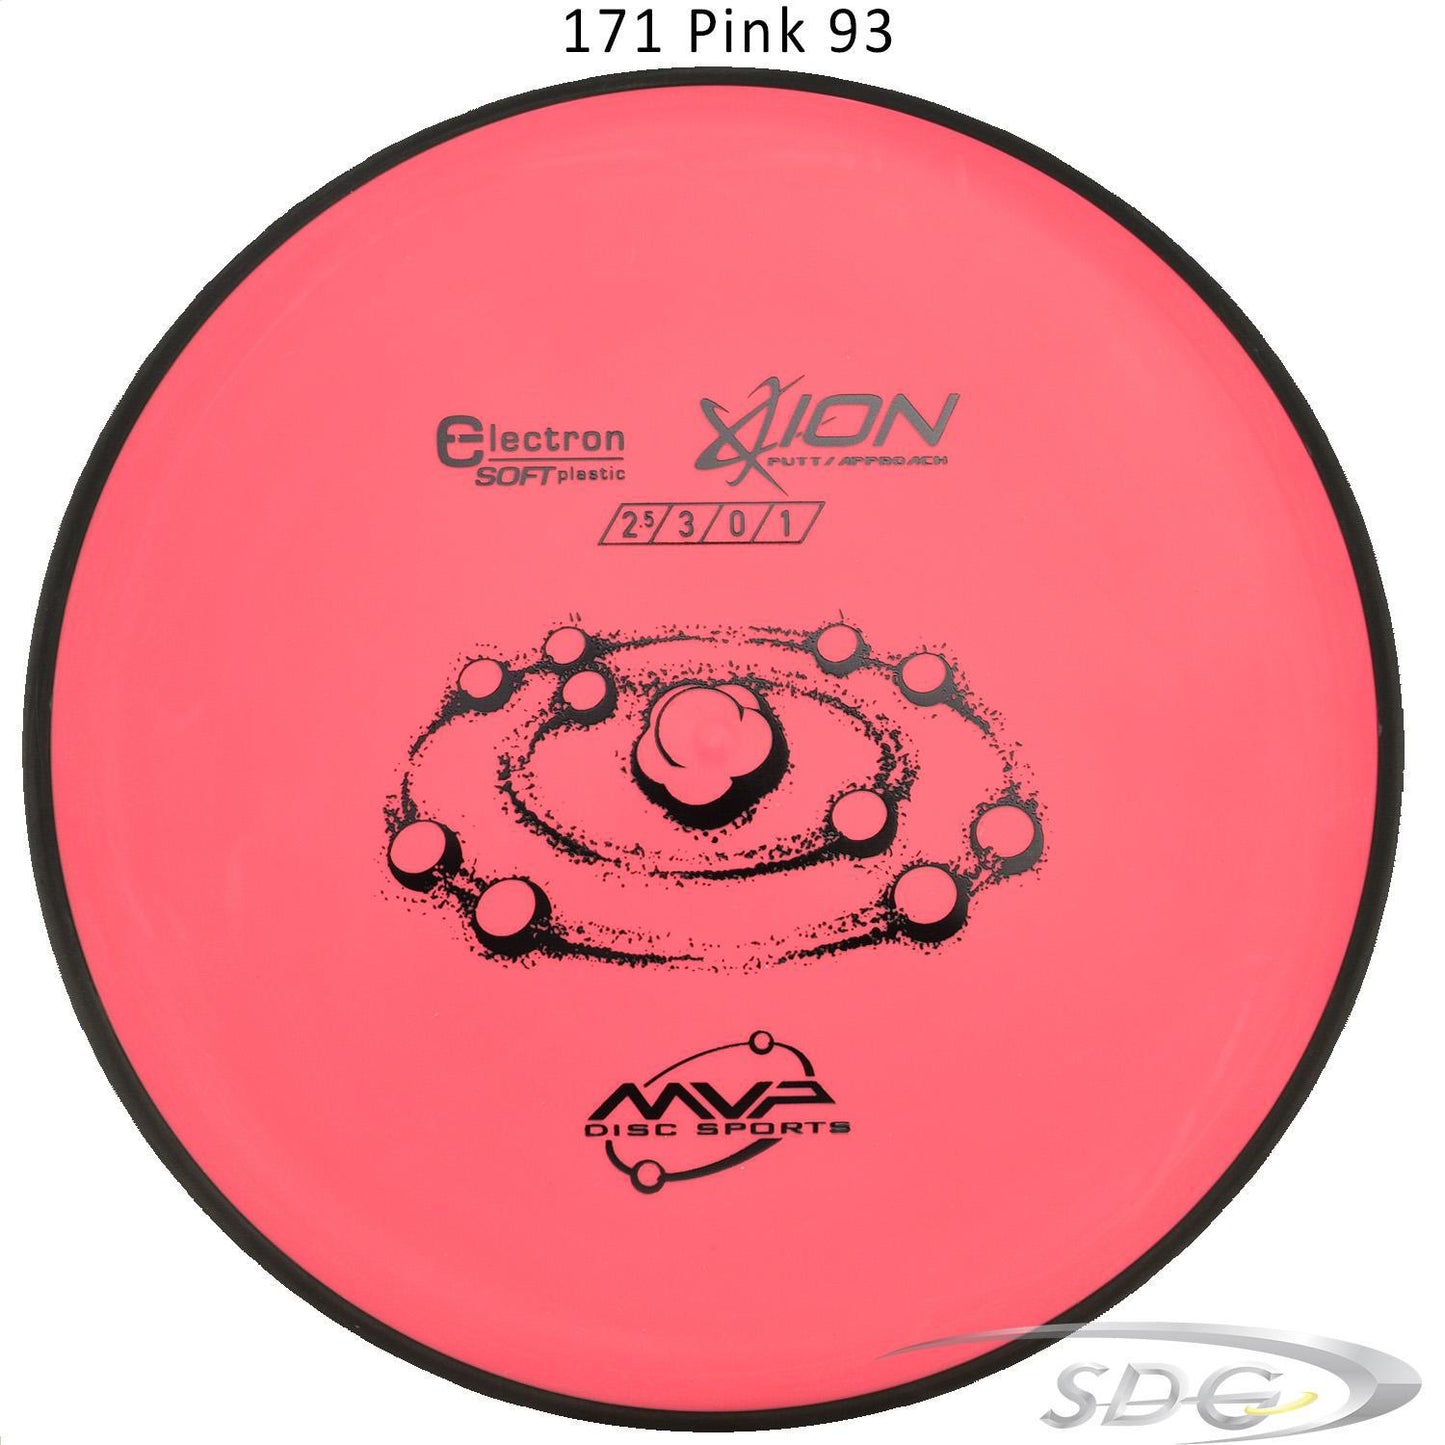 mvp-electron-ion-soft-disc-golf-putt-approach 171 Pink 93 